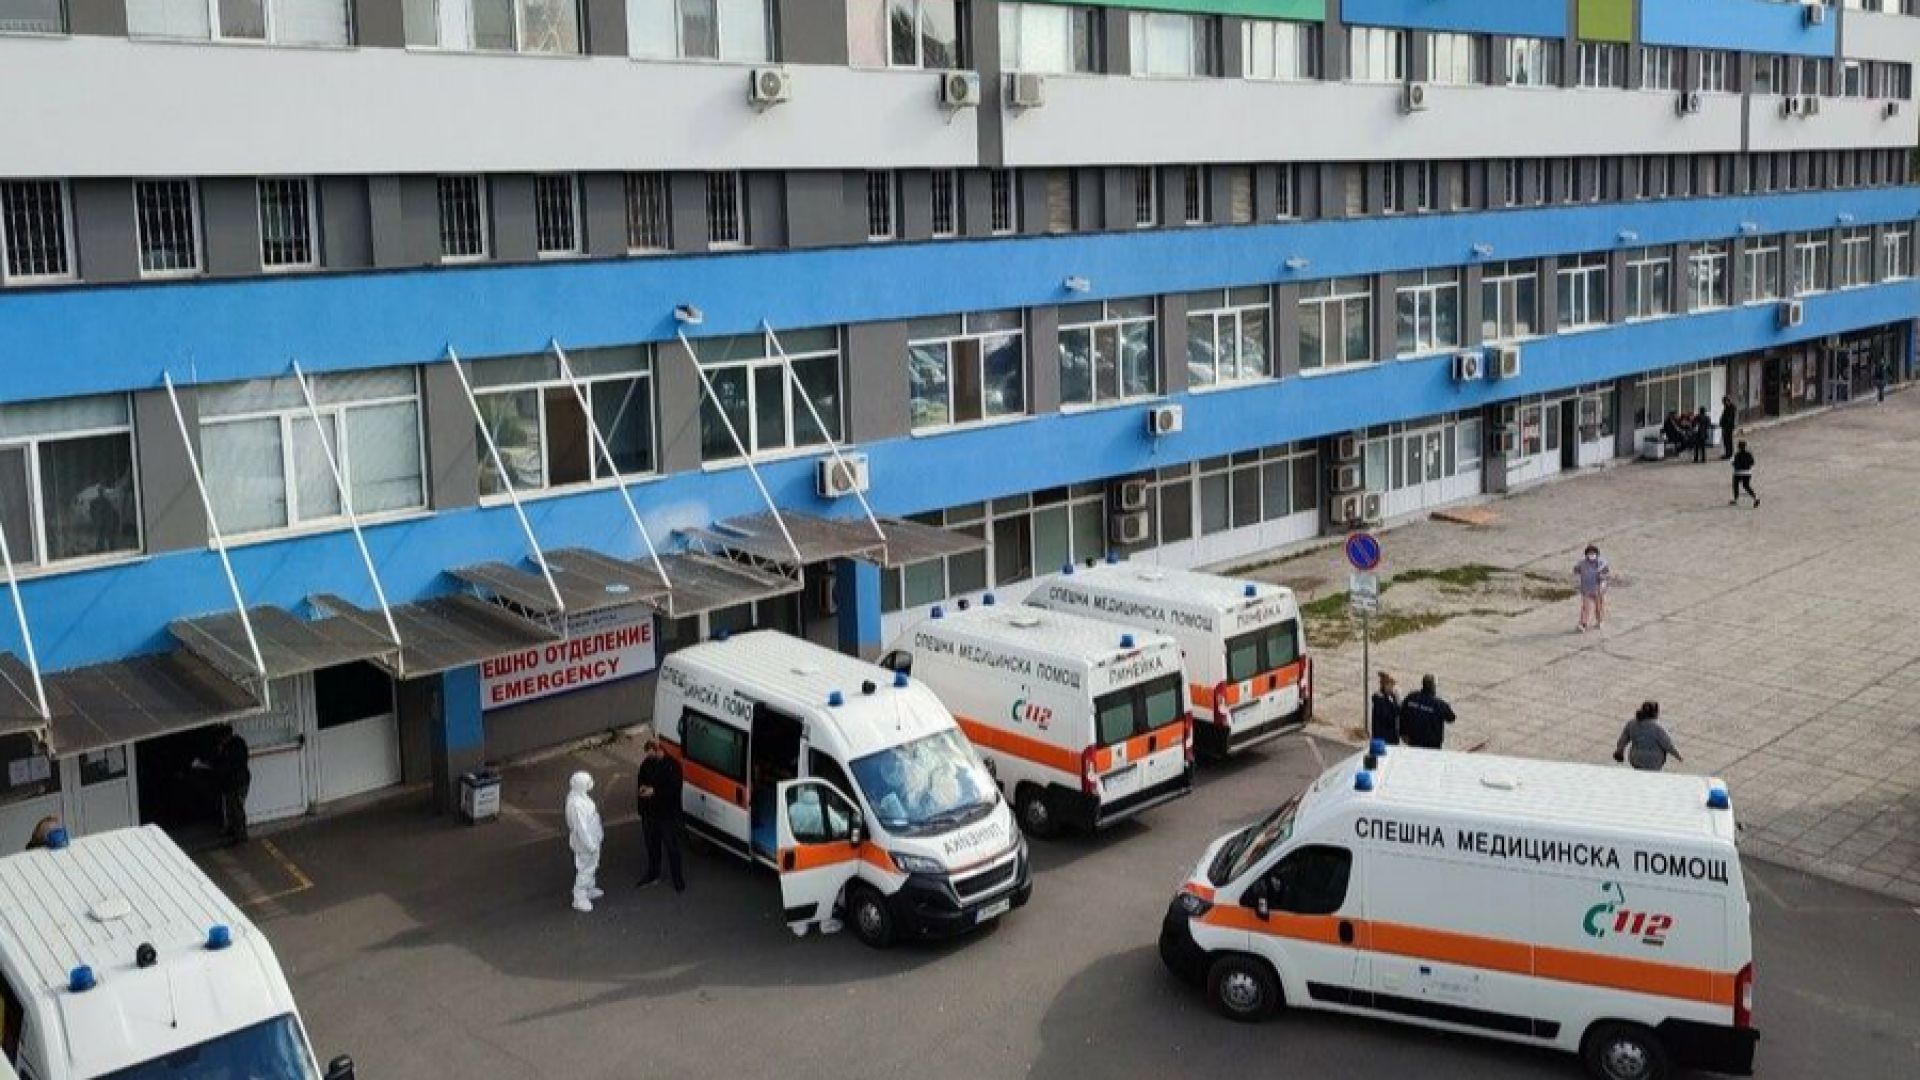 УМБАЛ-Бургас разкри кабинет за наблюдение на пациенти с пейсмейкъри